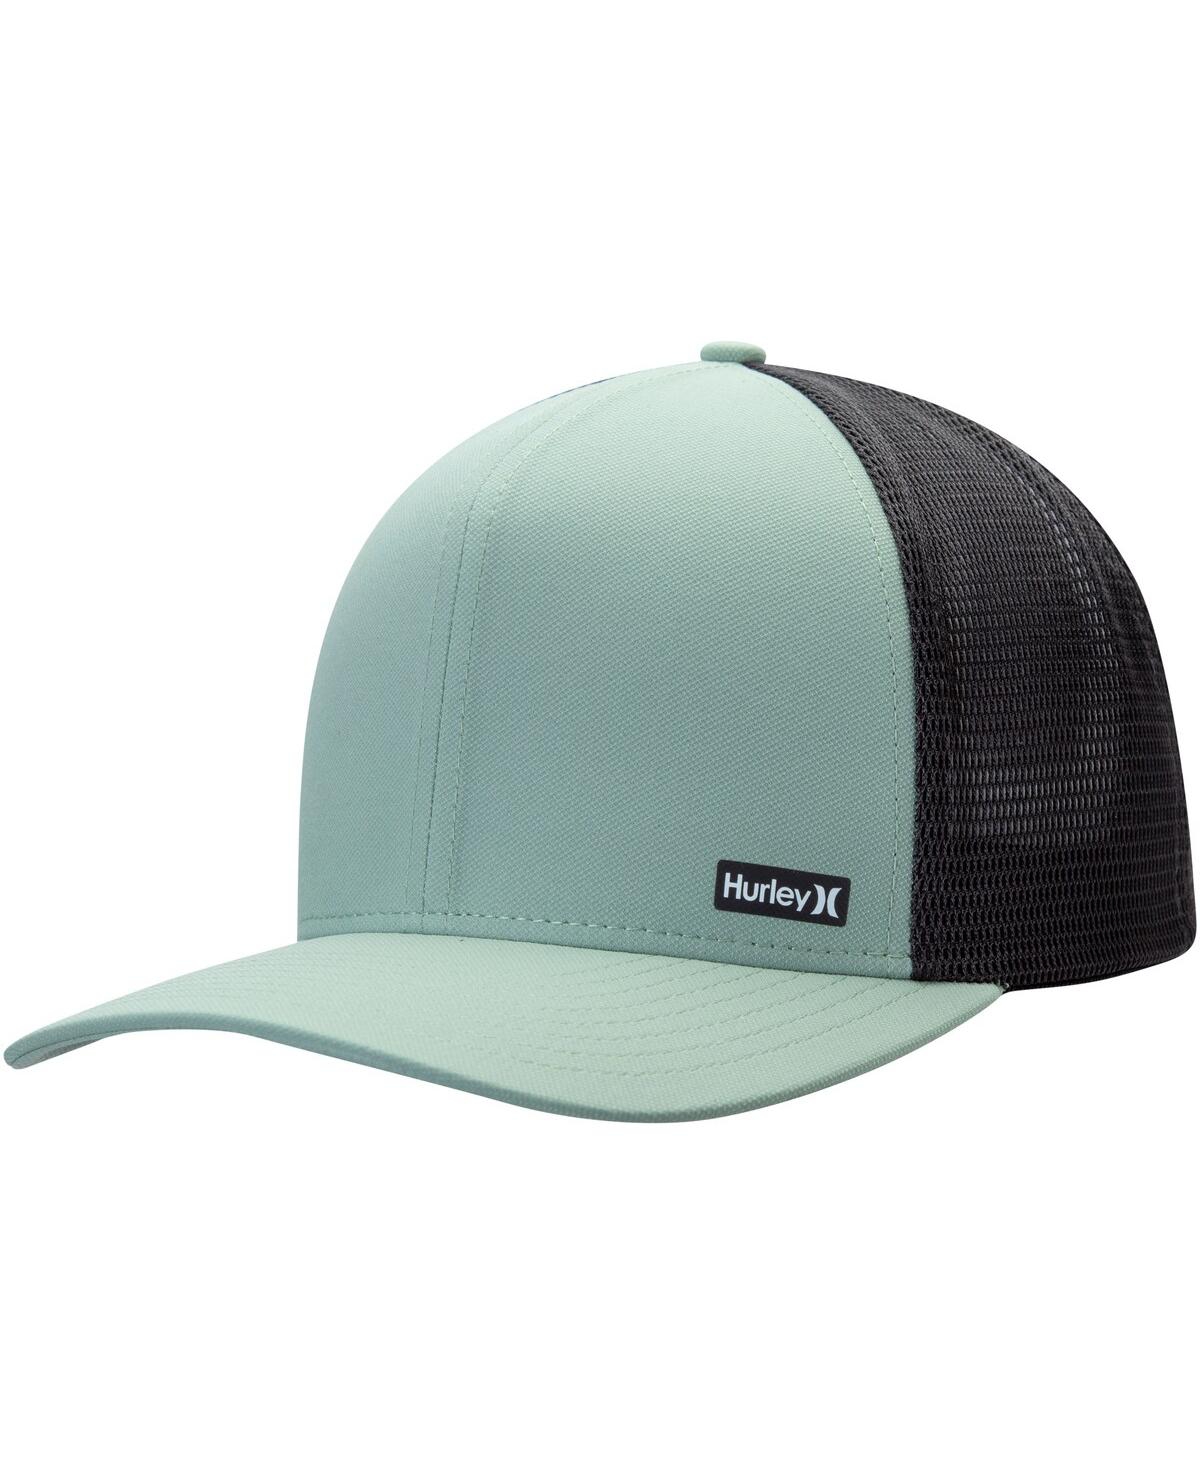 Men's Hurley Green League Trucker Adjustable Hat - Green